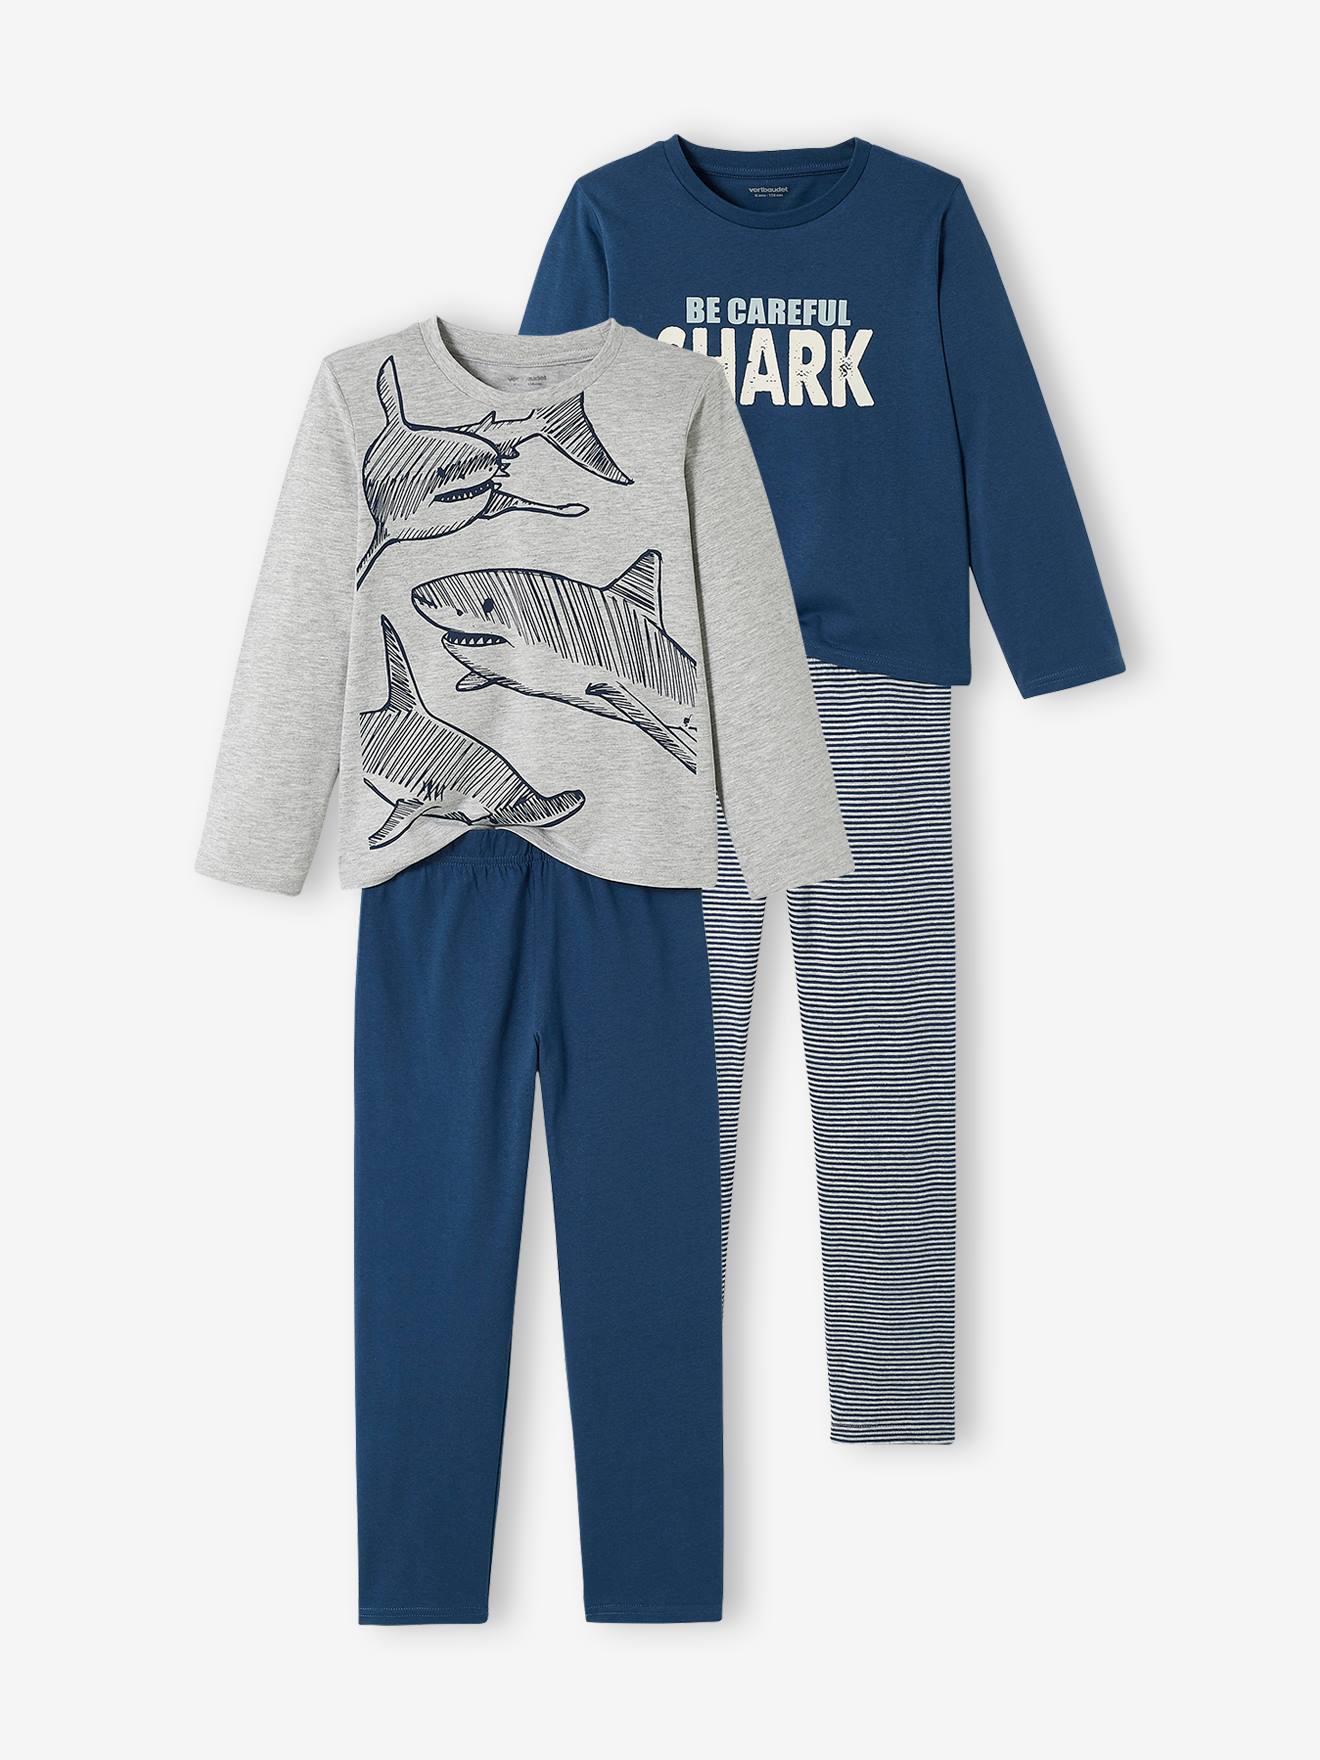 Set met 2 jongenspyjama's "haai" set blauw en grijs